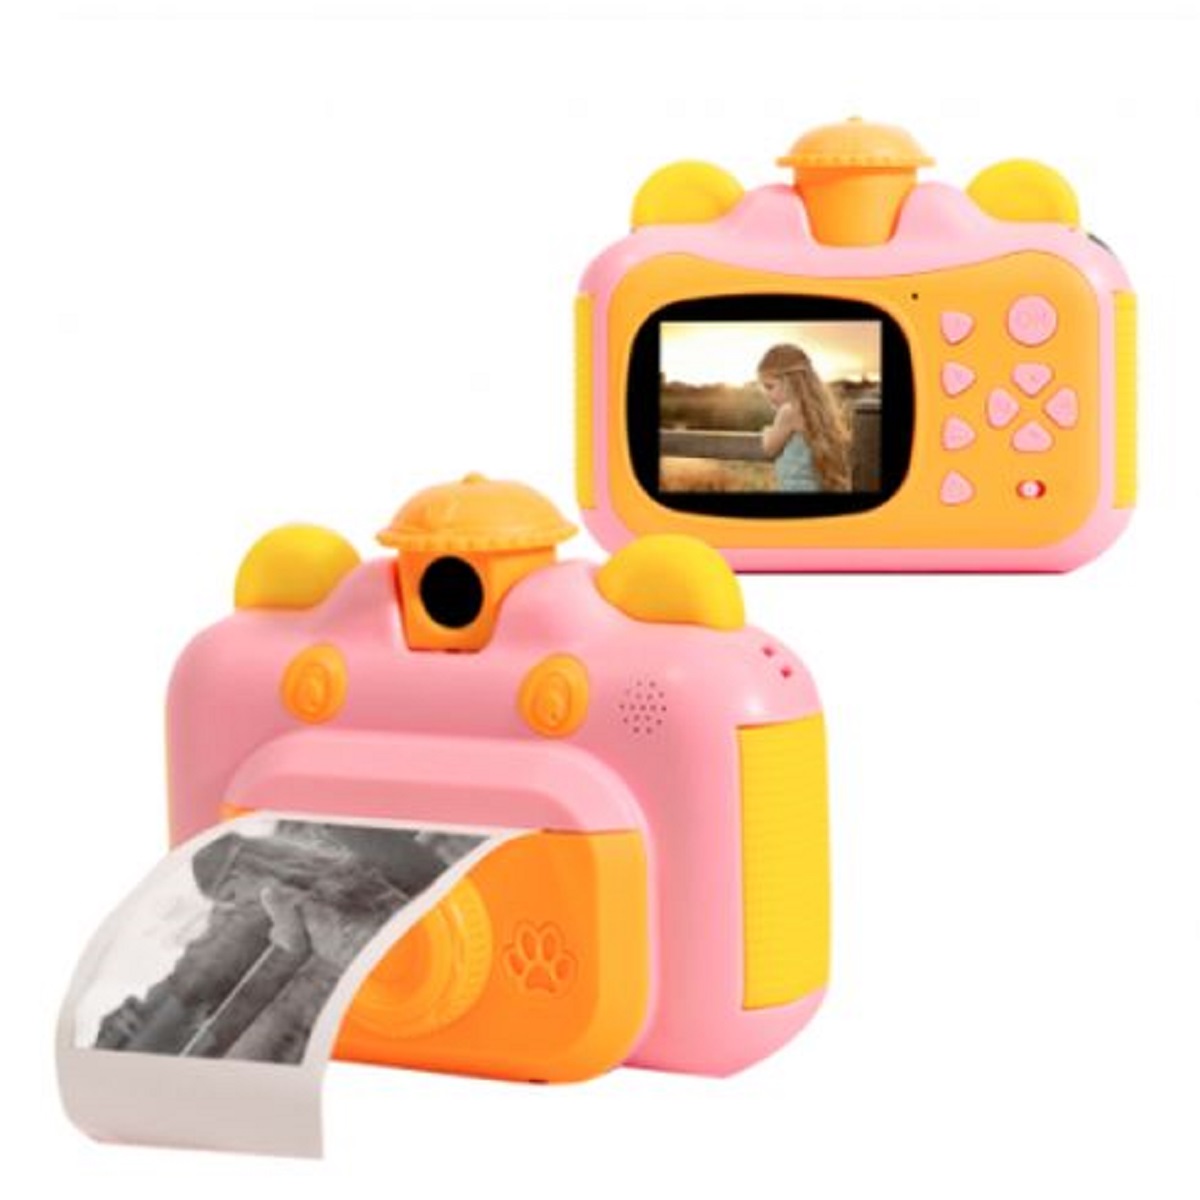 Детский фотоаппарат Leilam с мгновенной печатью фотографий 632714 детский фотоаппарат leilam с мгновенной печатью фотографий 6327141